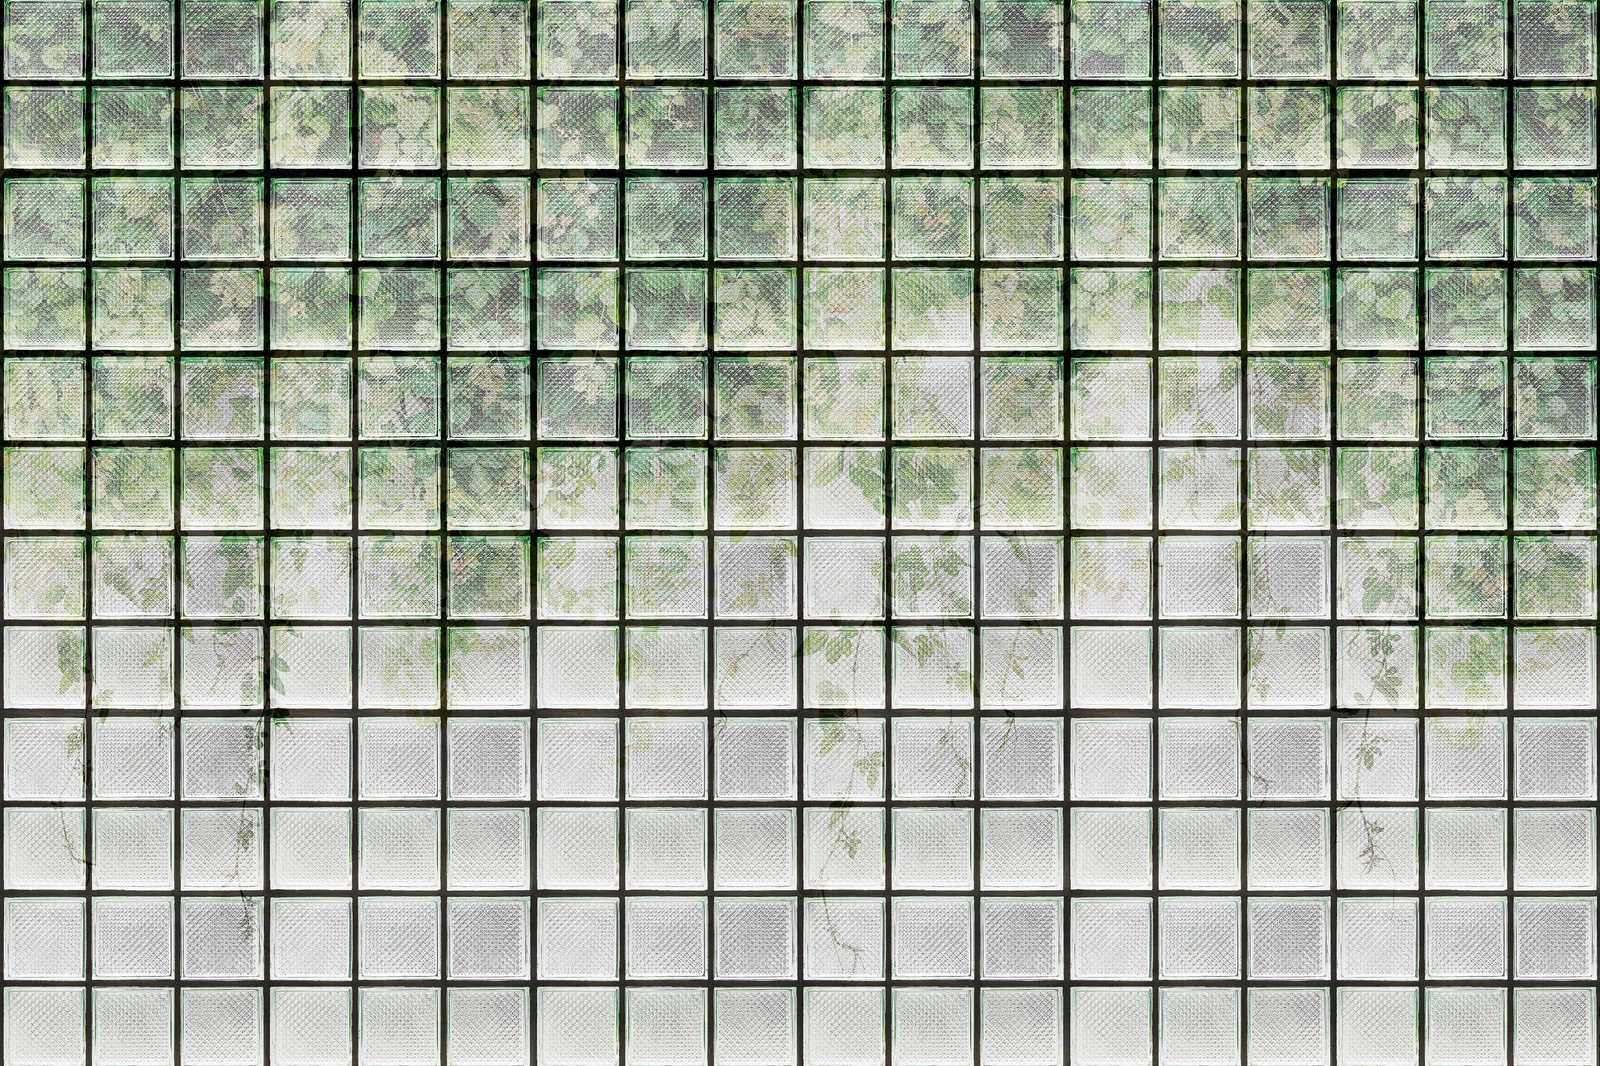             Green House 2 - Gewächshaus Leinwandbild Blätter & Glasbausteine – 1,20 m x 0,80 m
        